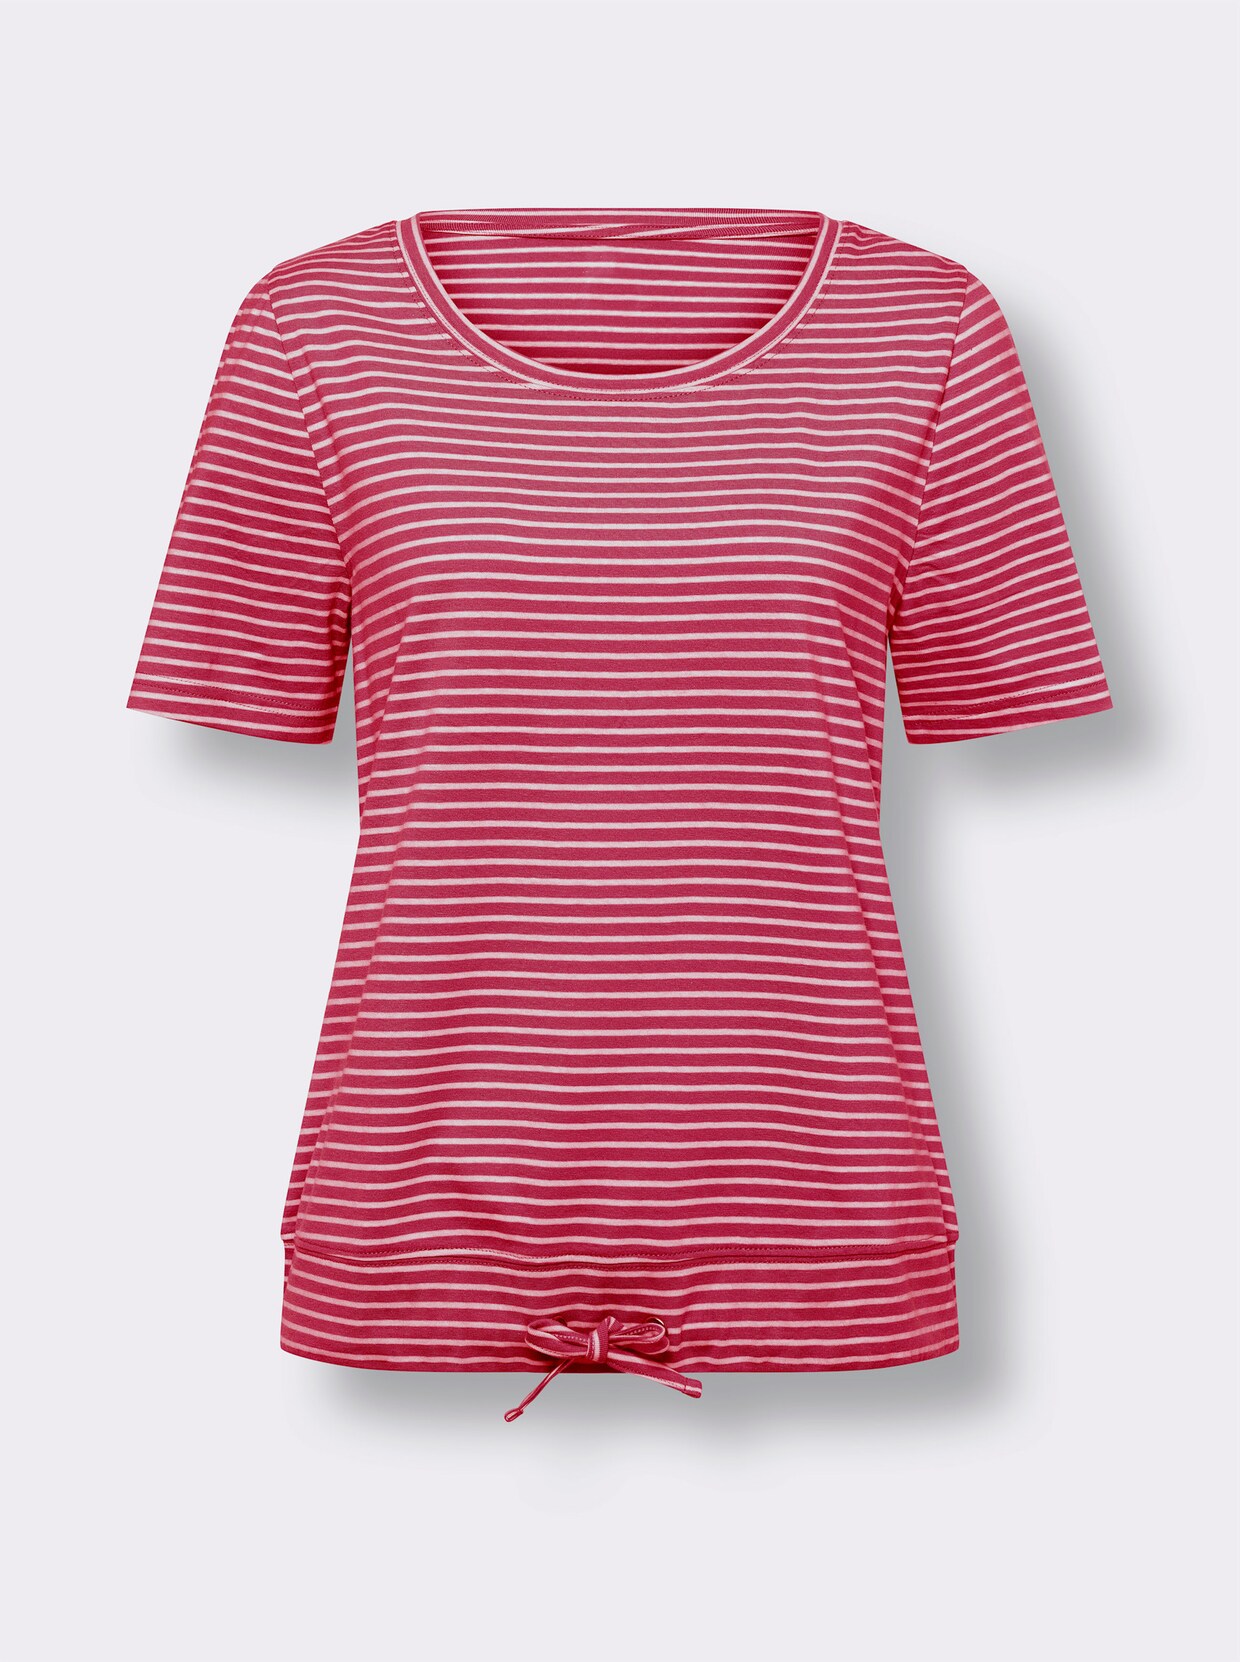 Tričko s krátkymi rukávmi - Červeno-bielo-pruhované